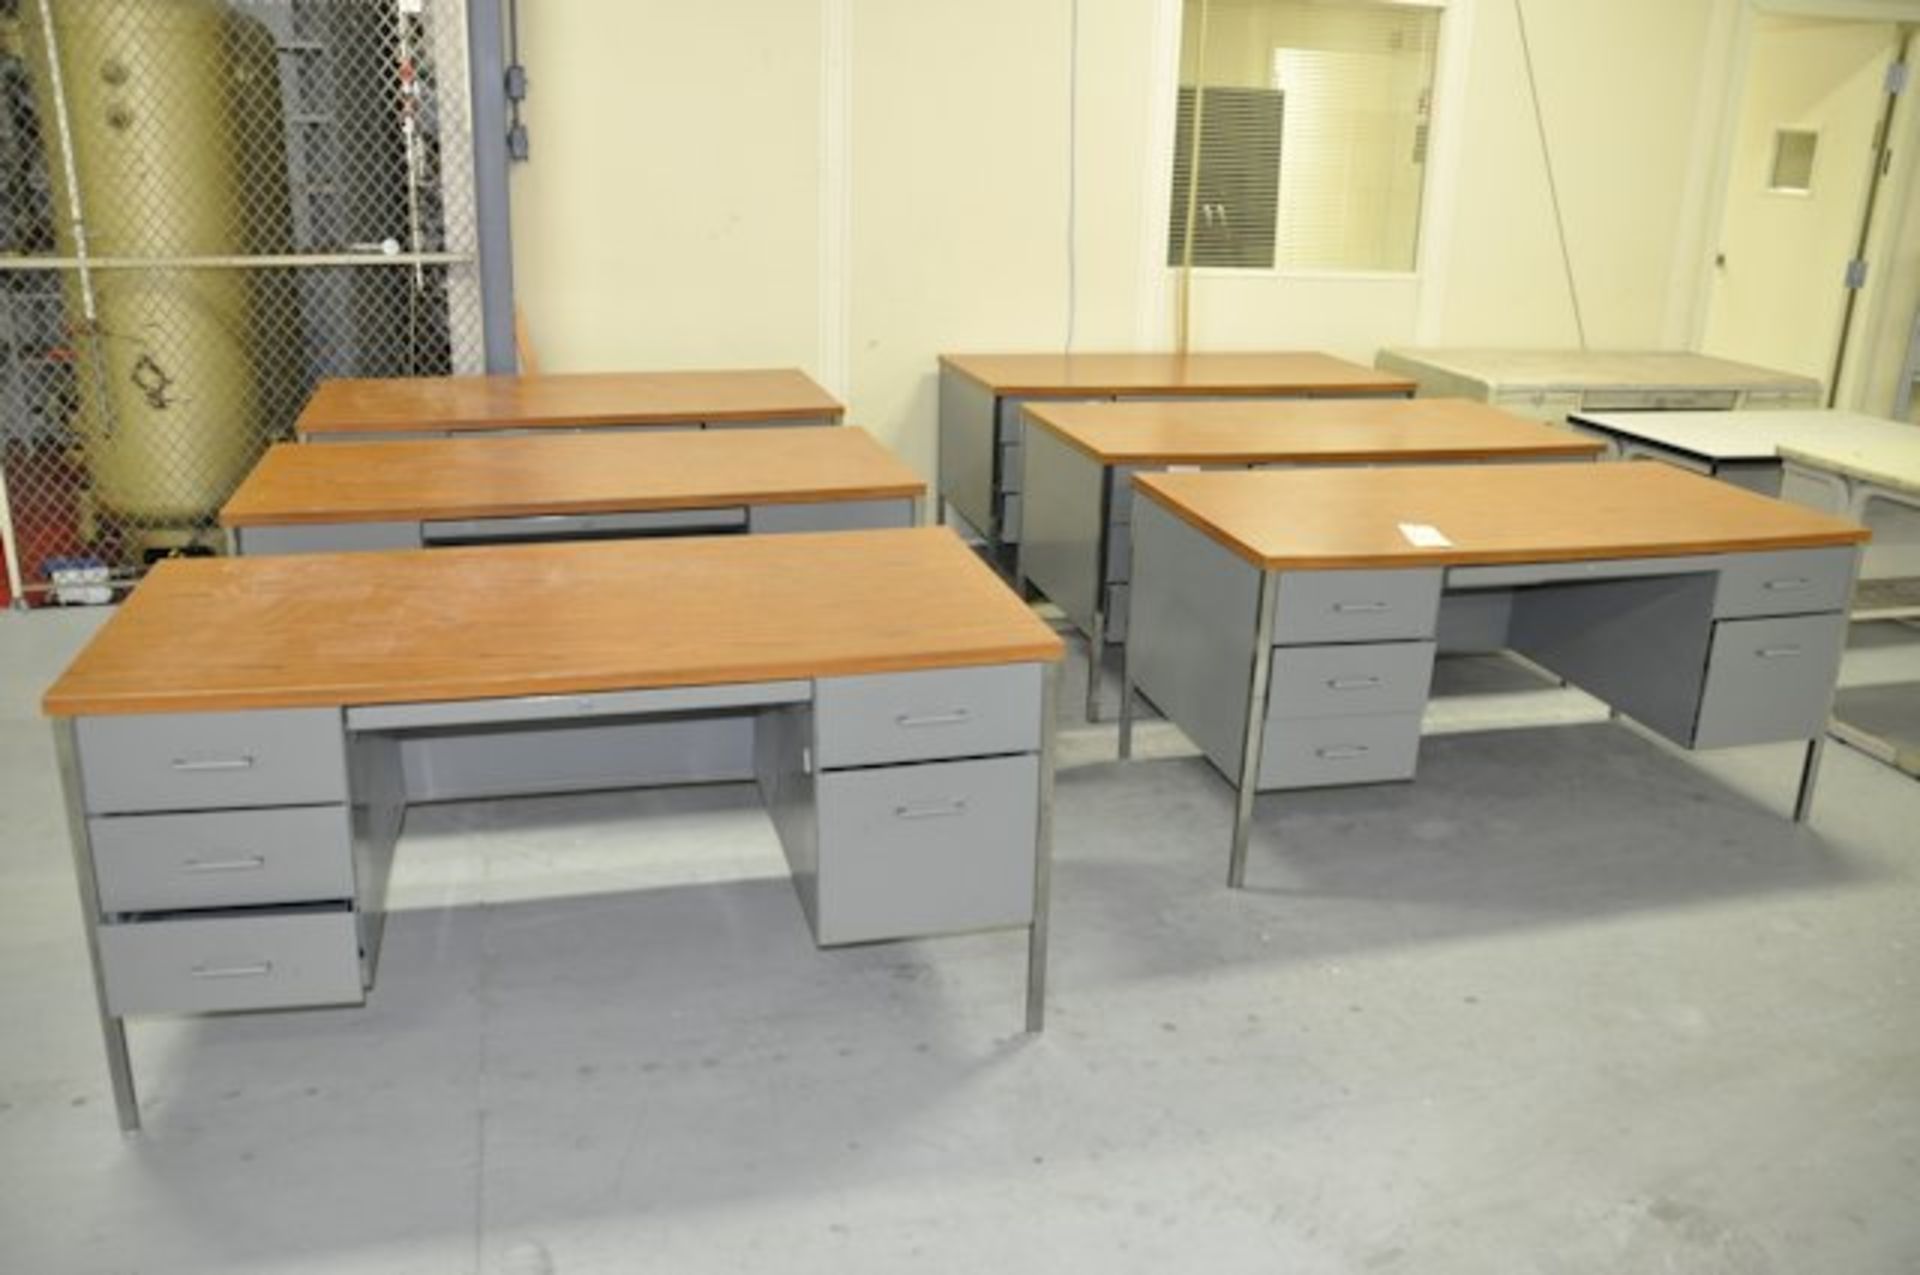 Lot-(10) Desks in (3) Rows